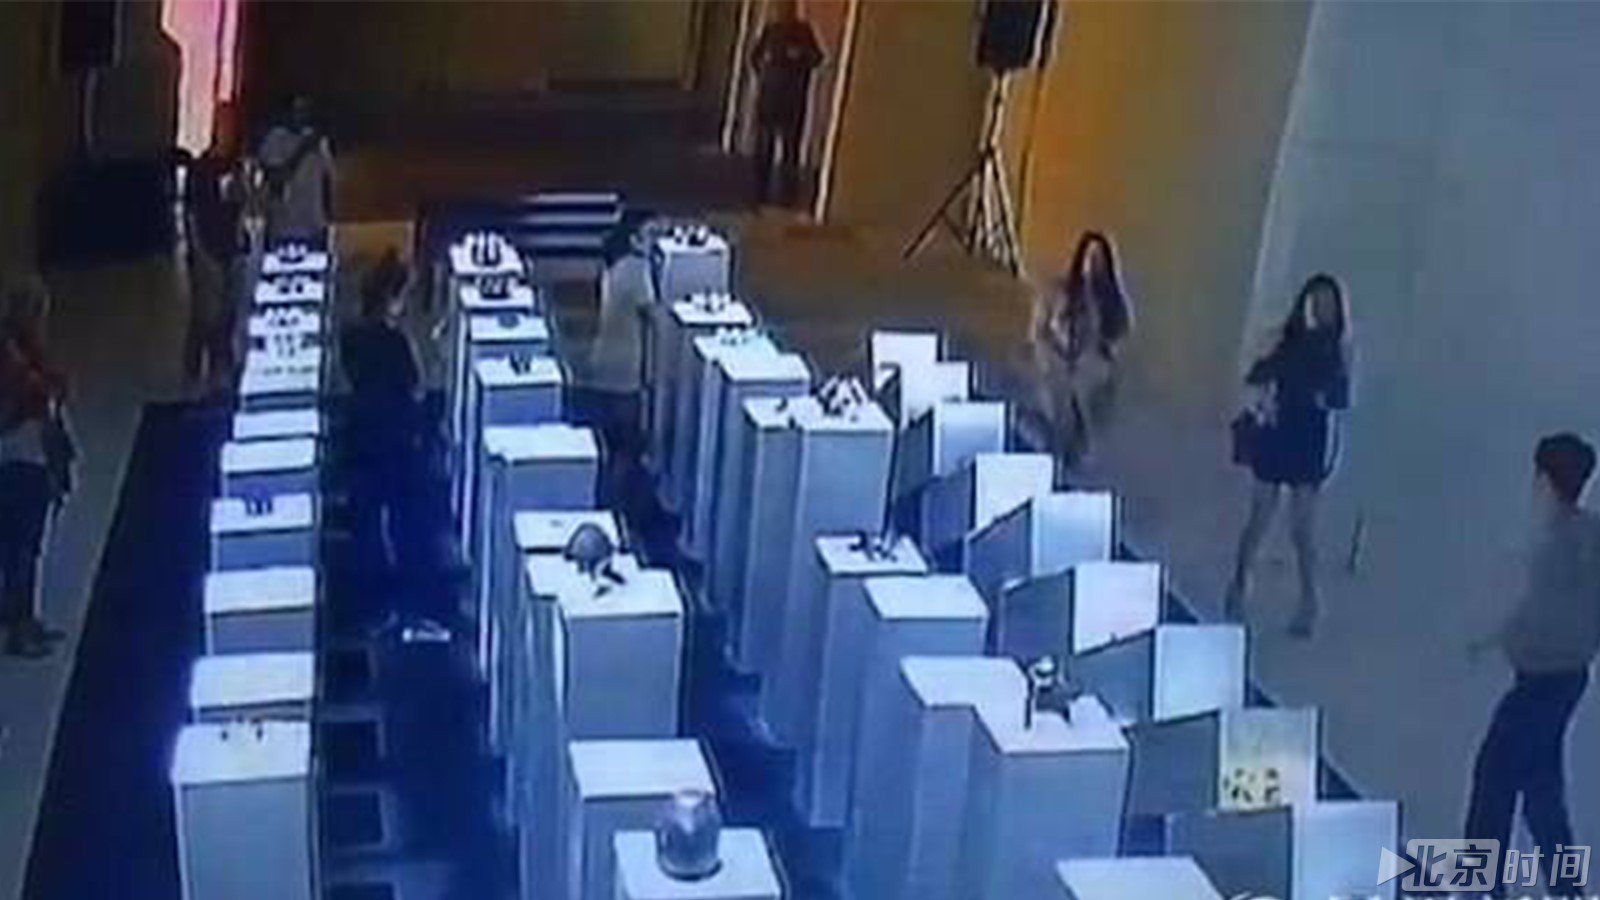 女子自拍引“多米诺骨牌效应” 135万艺术品被毁